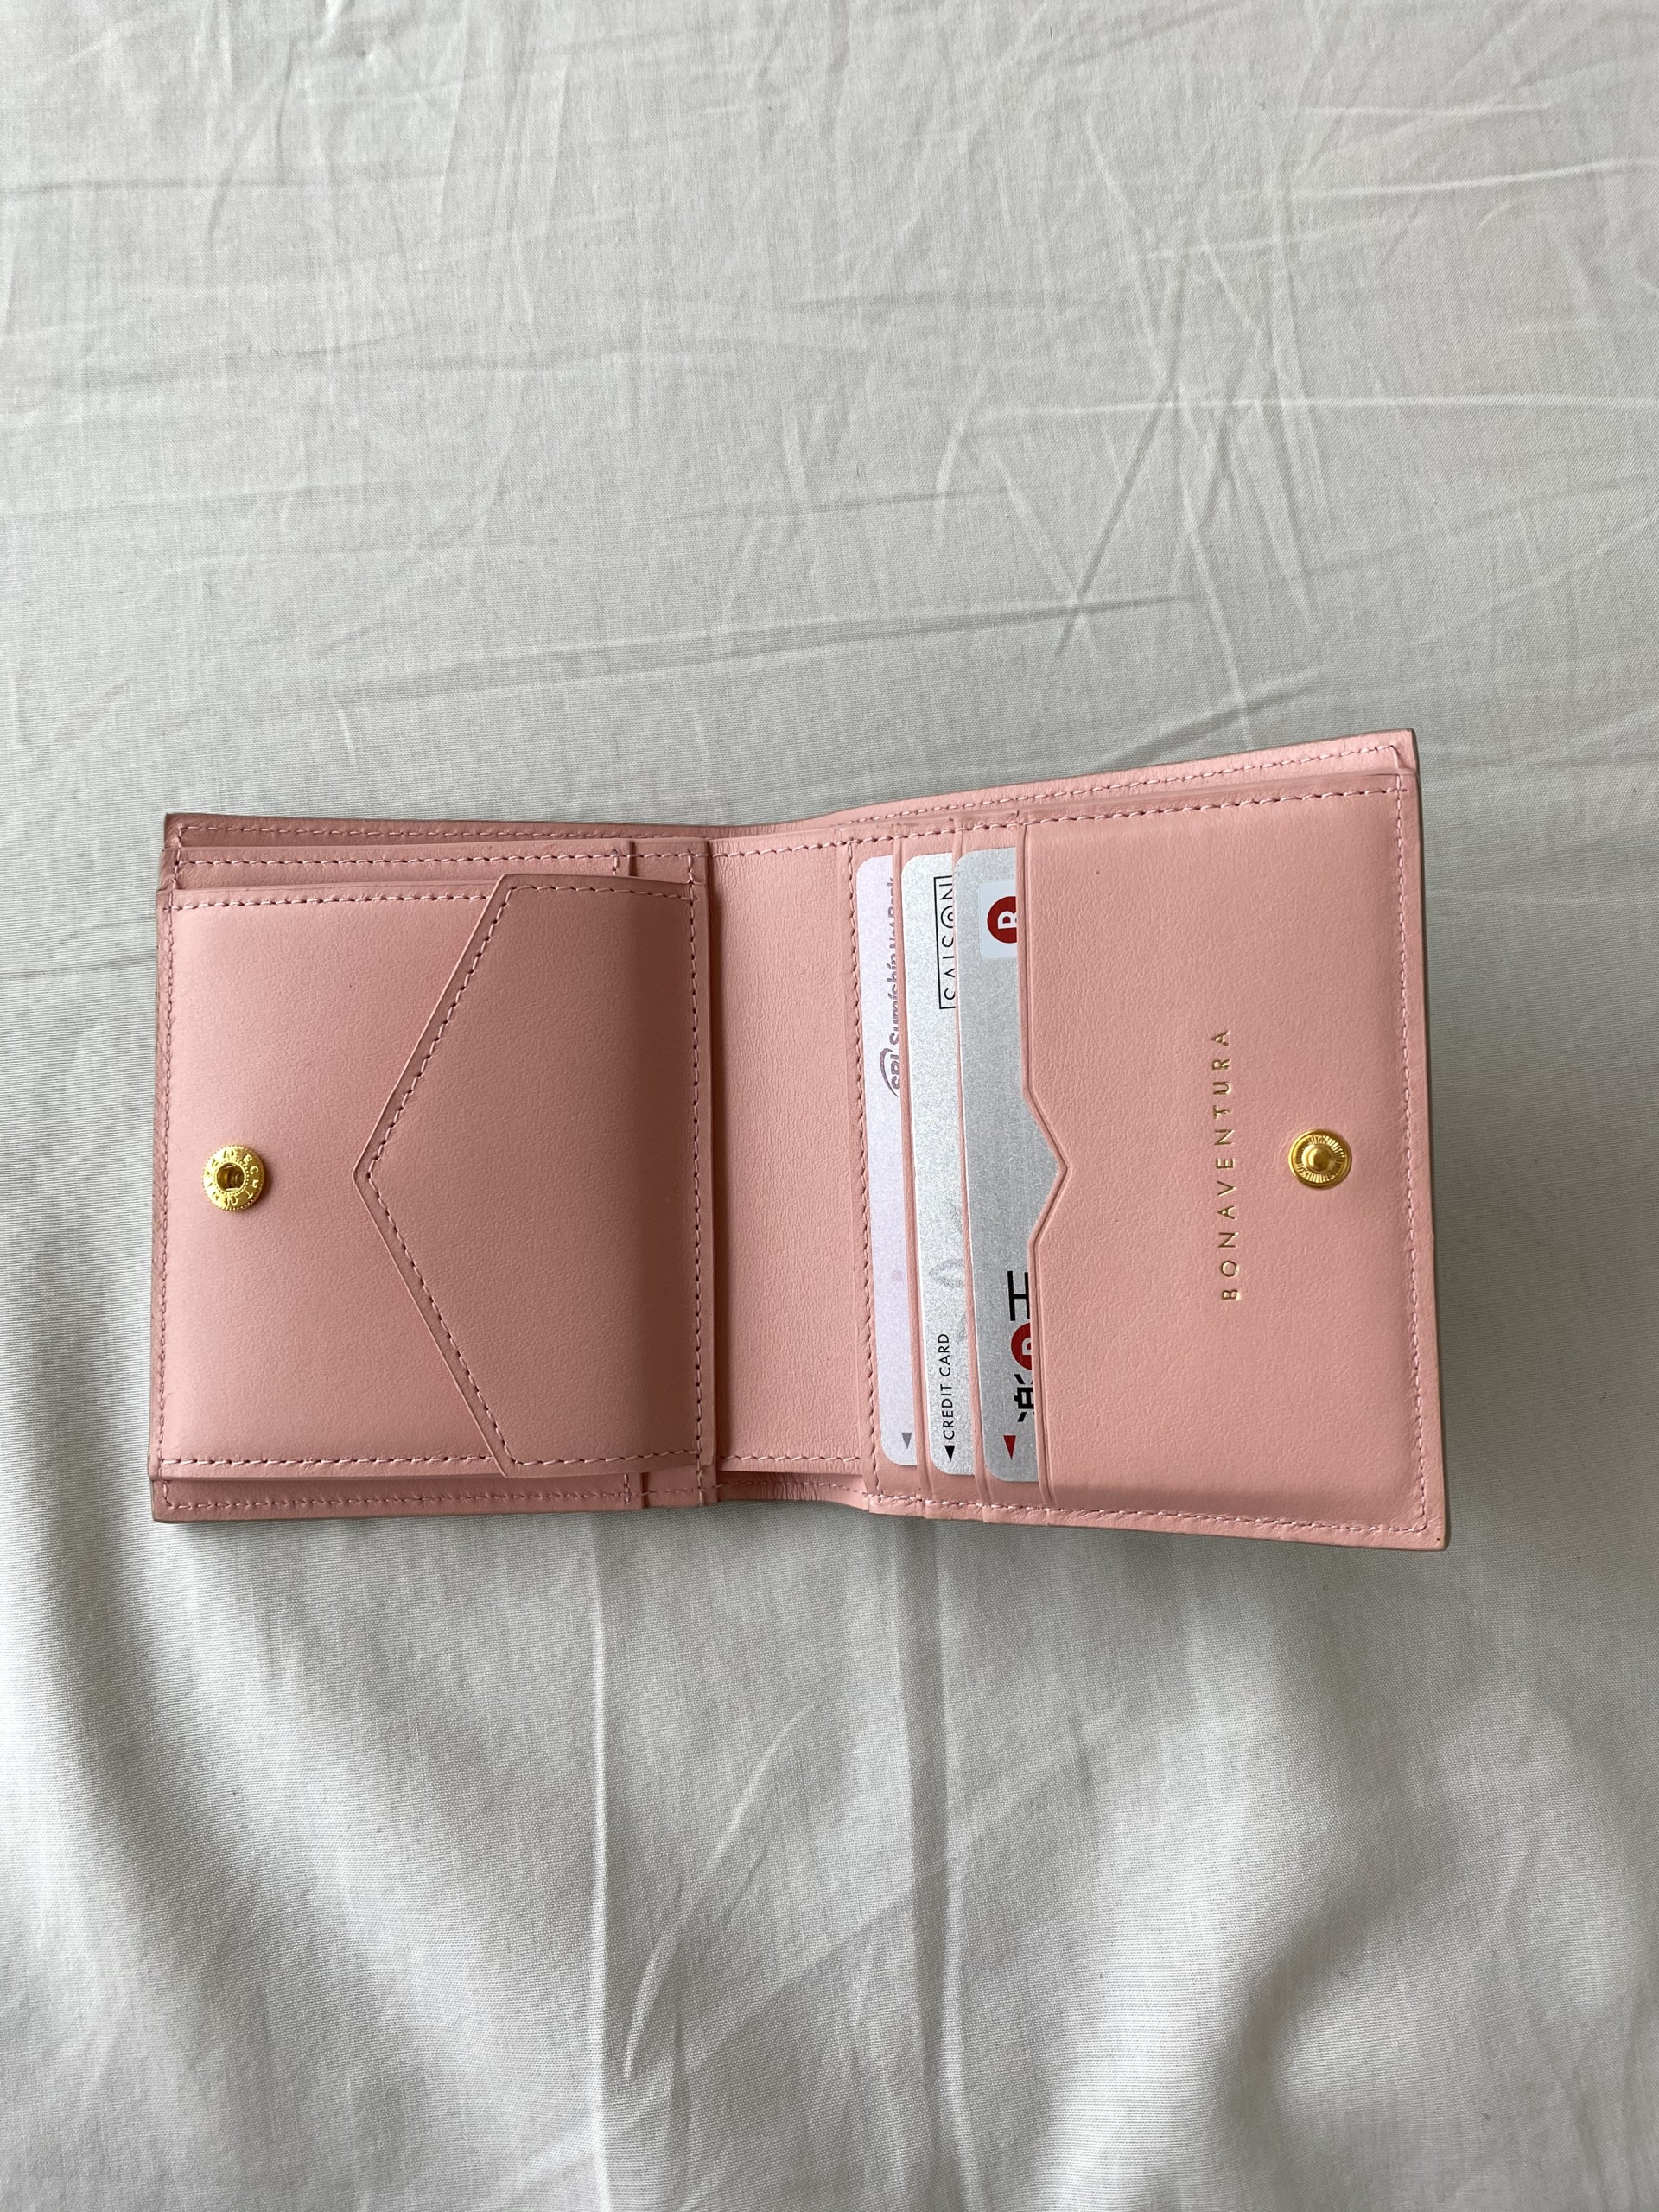 ボナベンチュラ 二つ折り財布 新品未使用 | ボナベンチュラ 折り財布